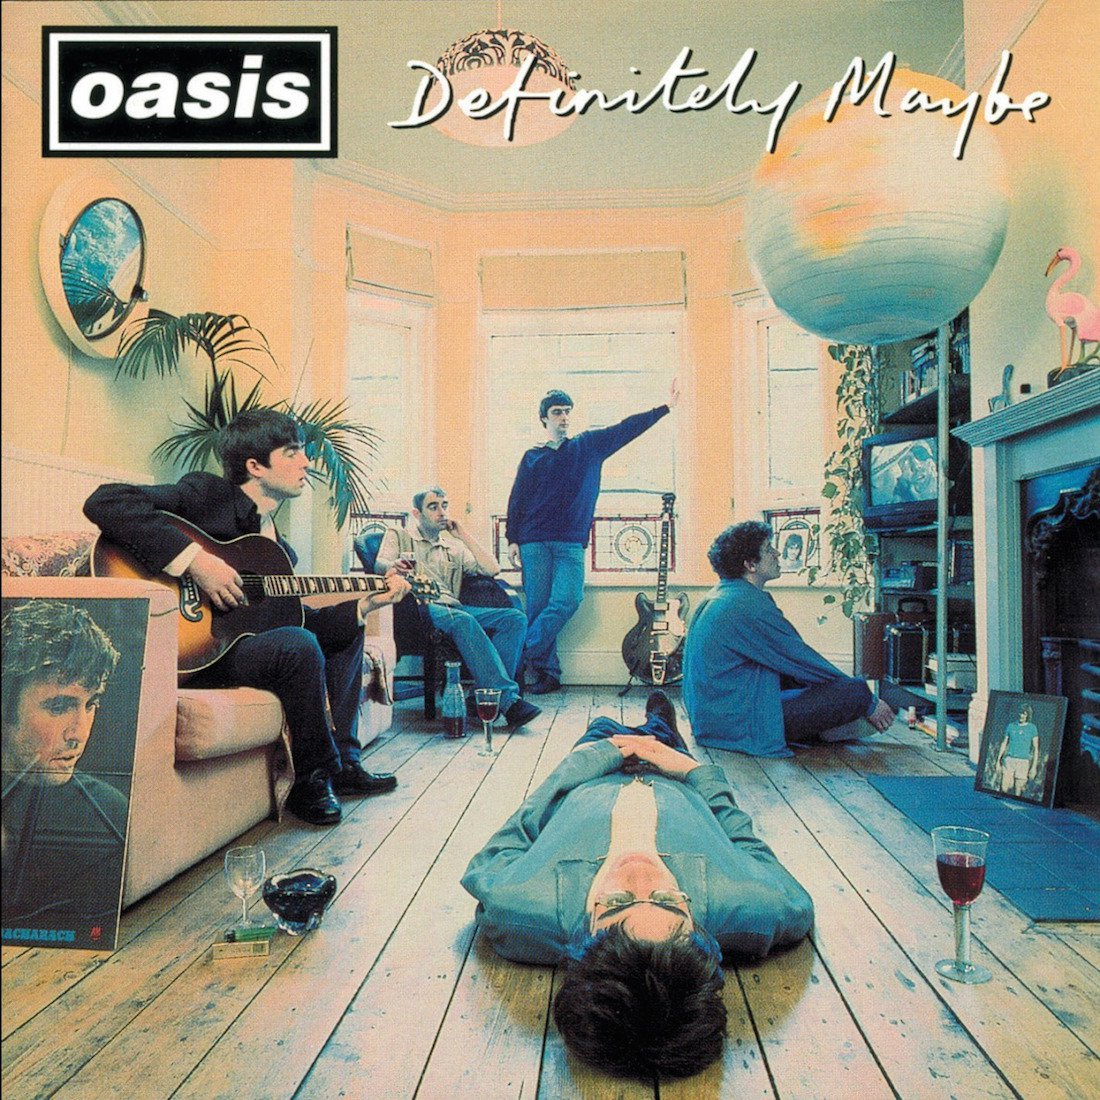 ¡25 años de Definitely Maybe! 10 curiosidades del disco debut de Oasis